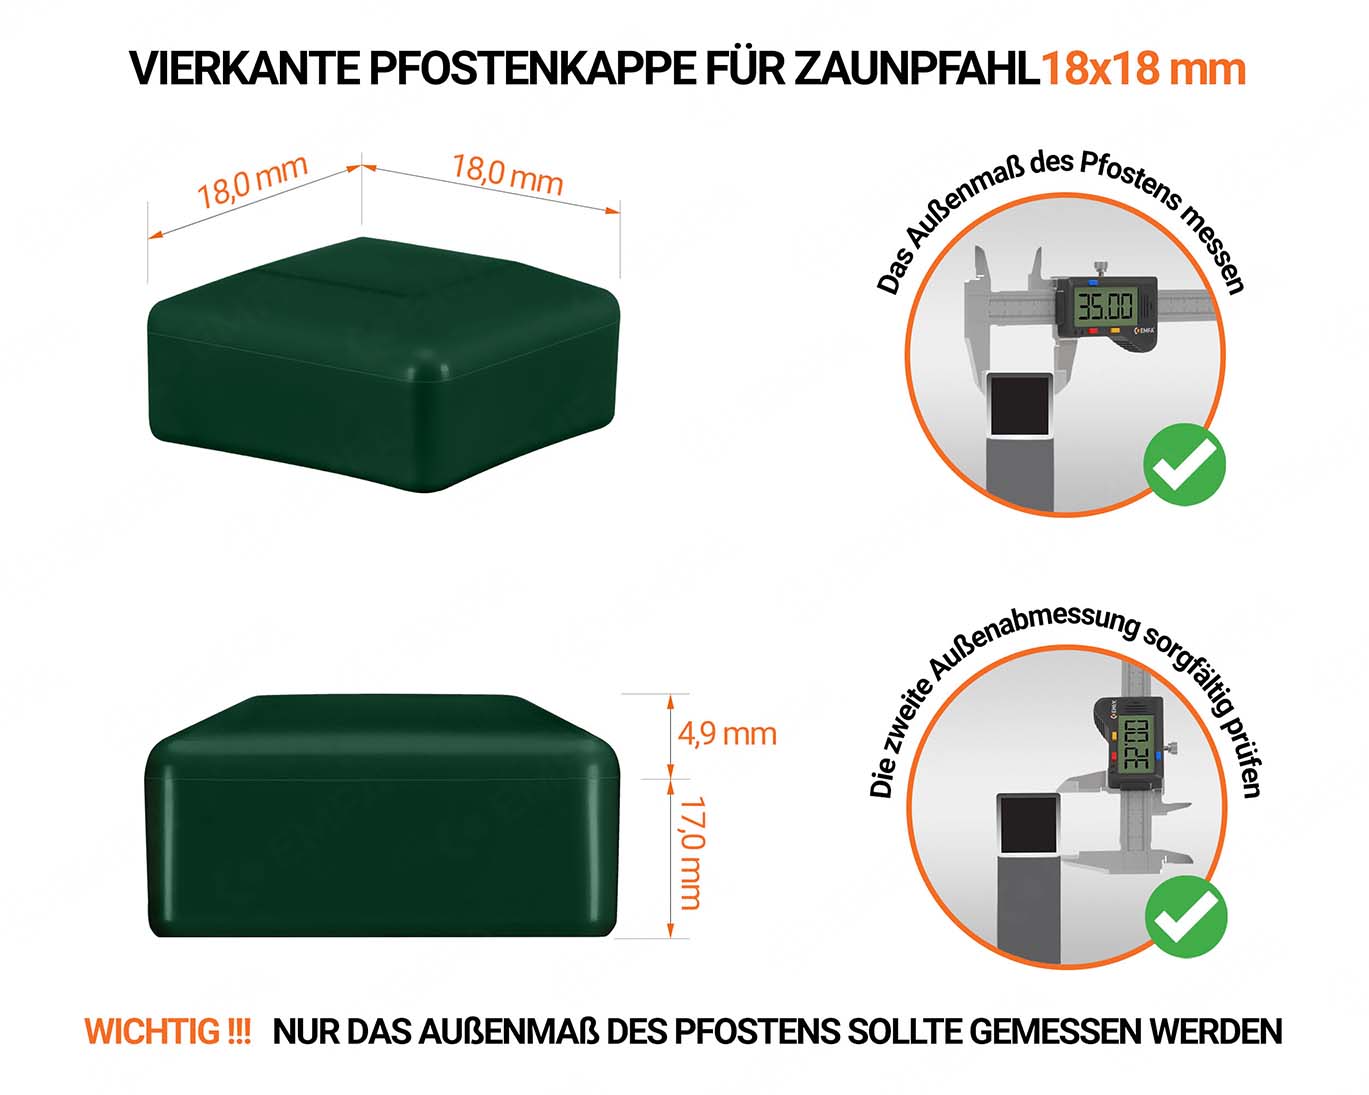 Grüne Pfostenkappen vierkant für Pfostenmaße 18x18 mm  mit technischen Abmessungen und Anleitung für korrekte Messung